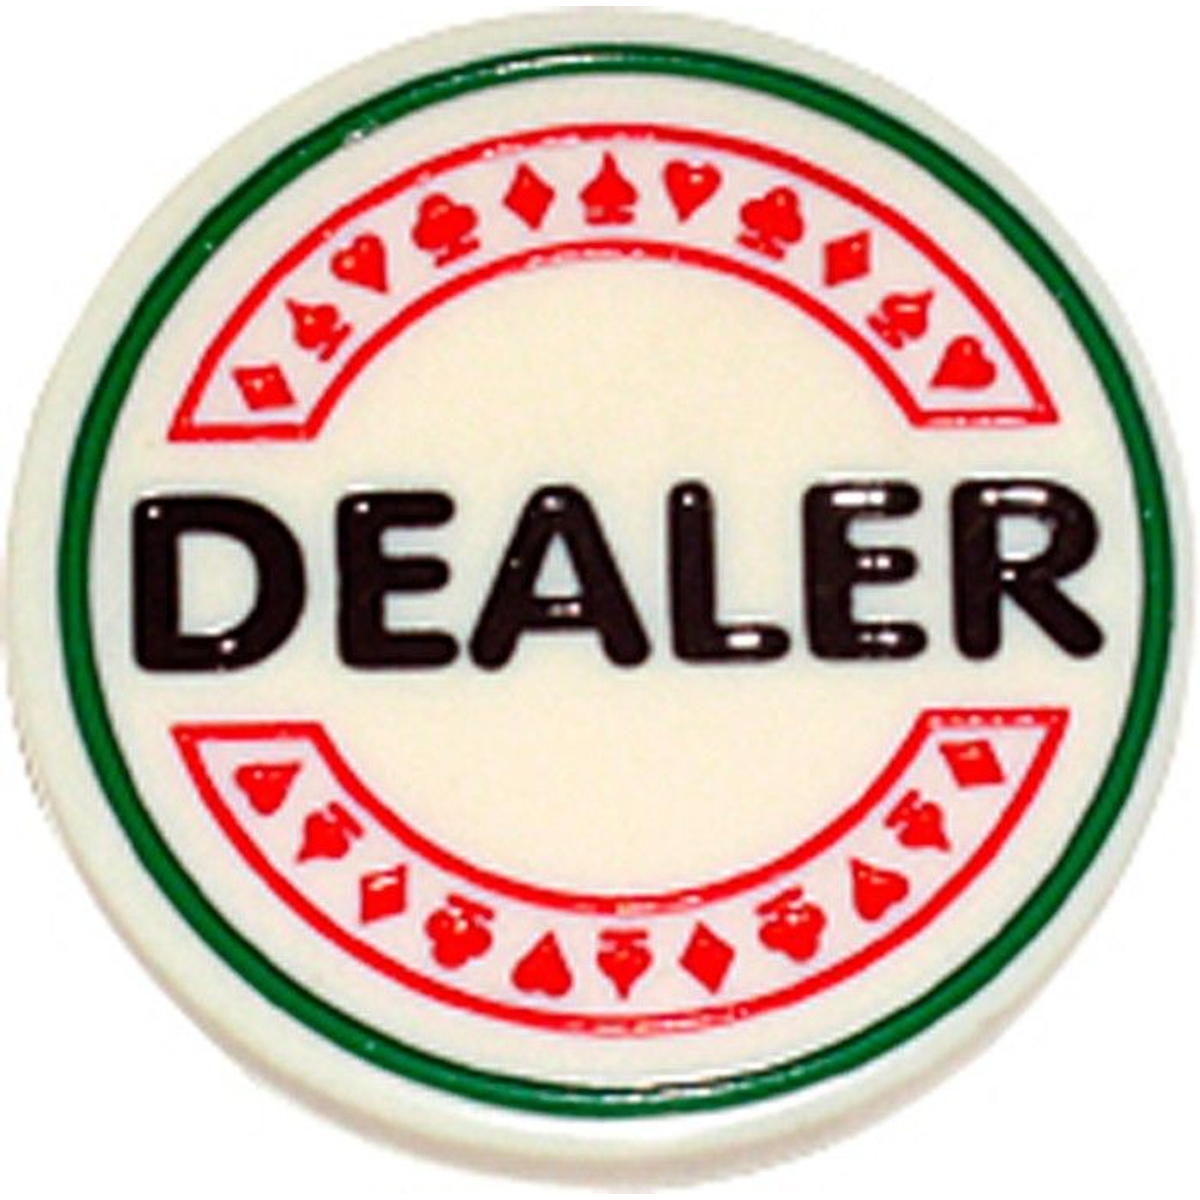  Dealer Button 